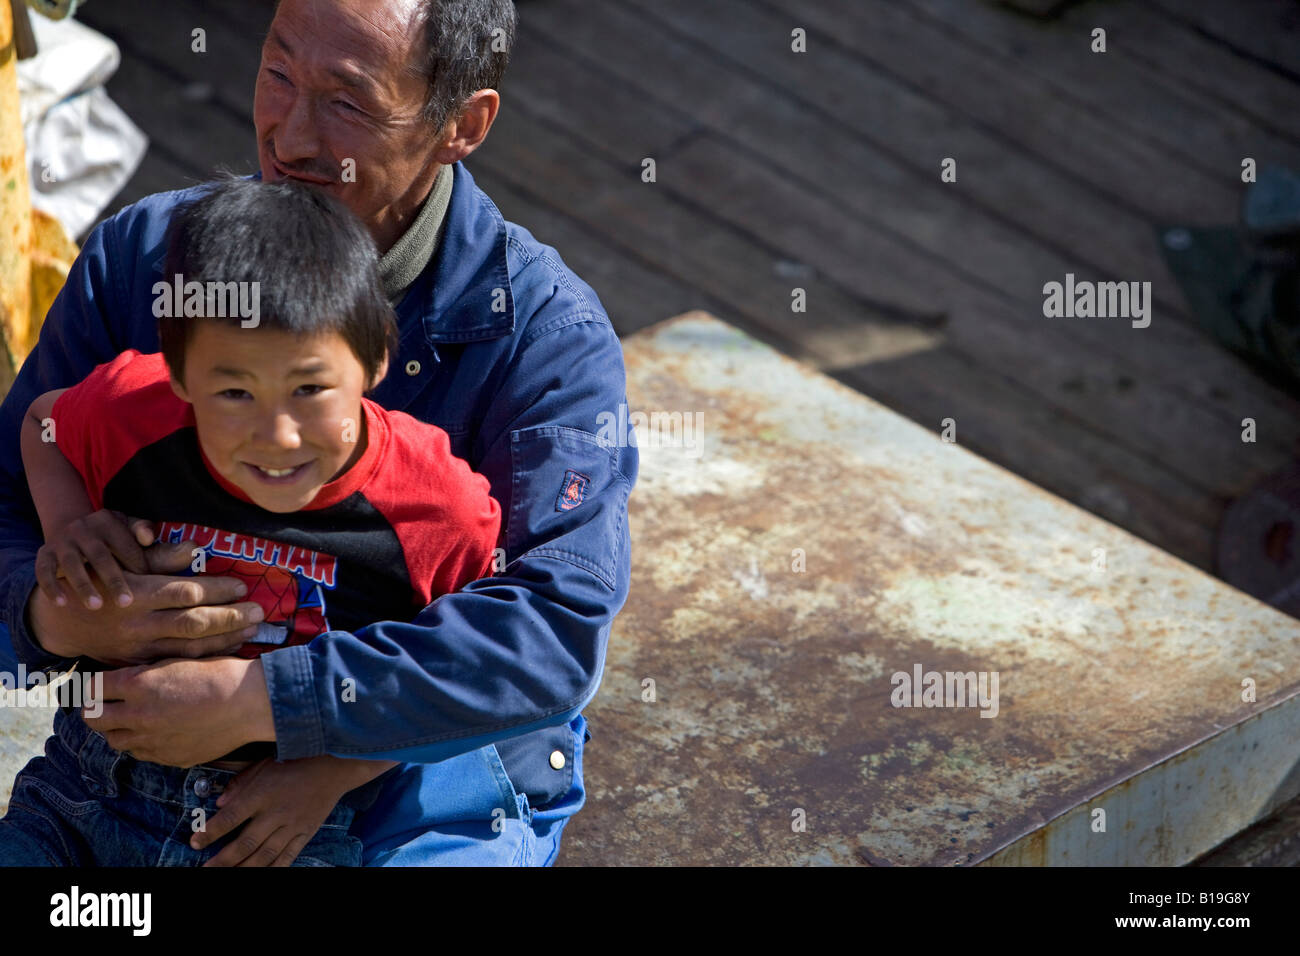 La Groenlandia, Ilulissat. Un padre di estrazione Inuit gioca con suo figlio sul ponte di una barca da pesca nella zona portuale. Foto Stock